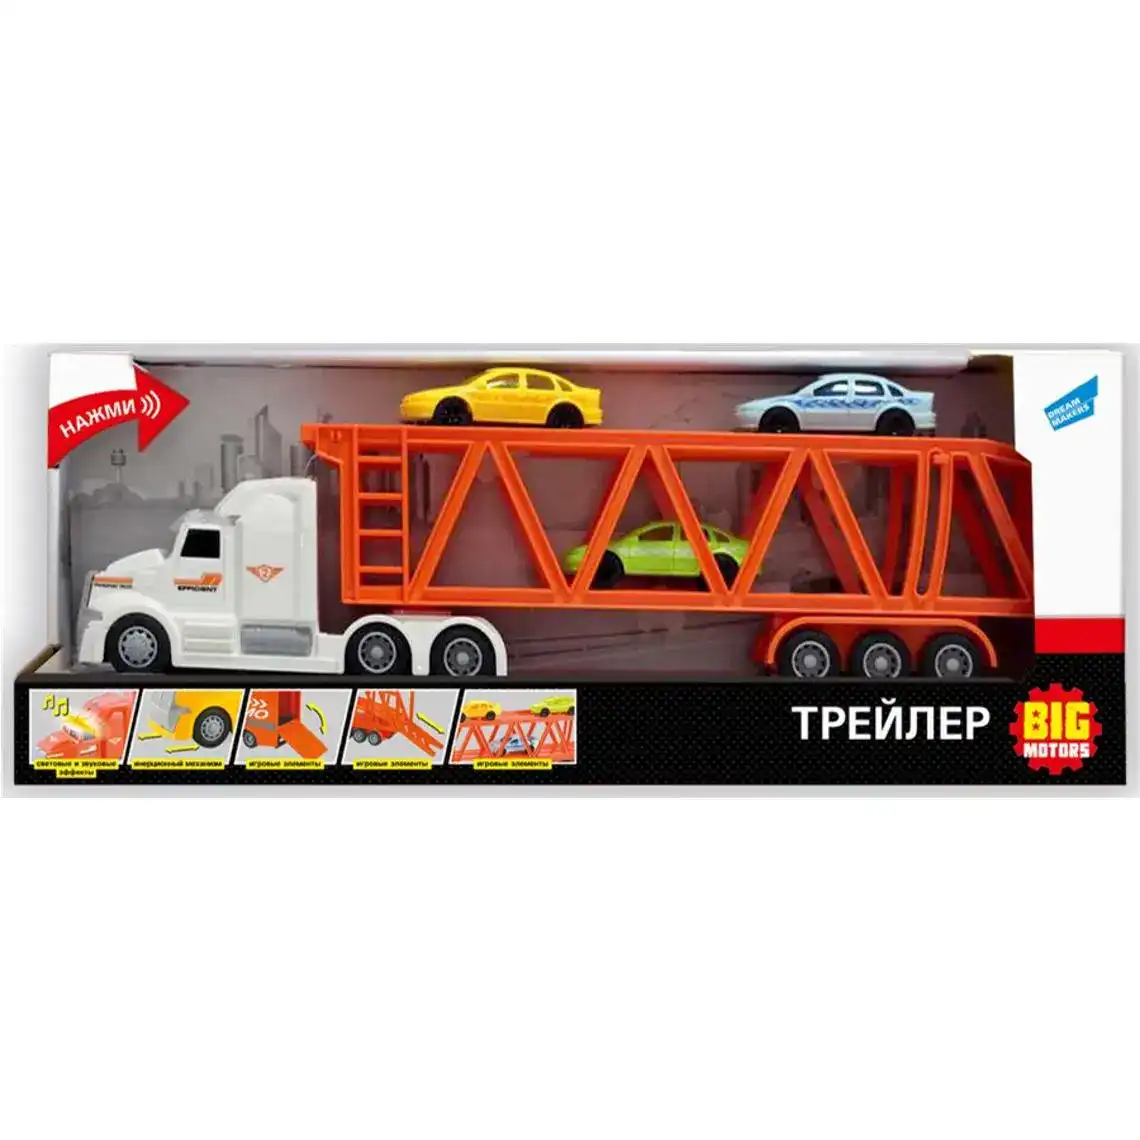 Іграшка Трейлер Big Motors для дітей від 3 років №WY782B 1 шт.